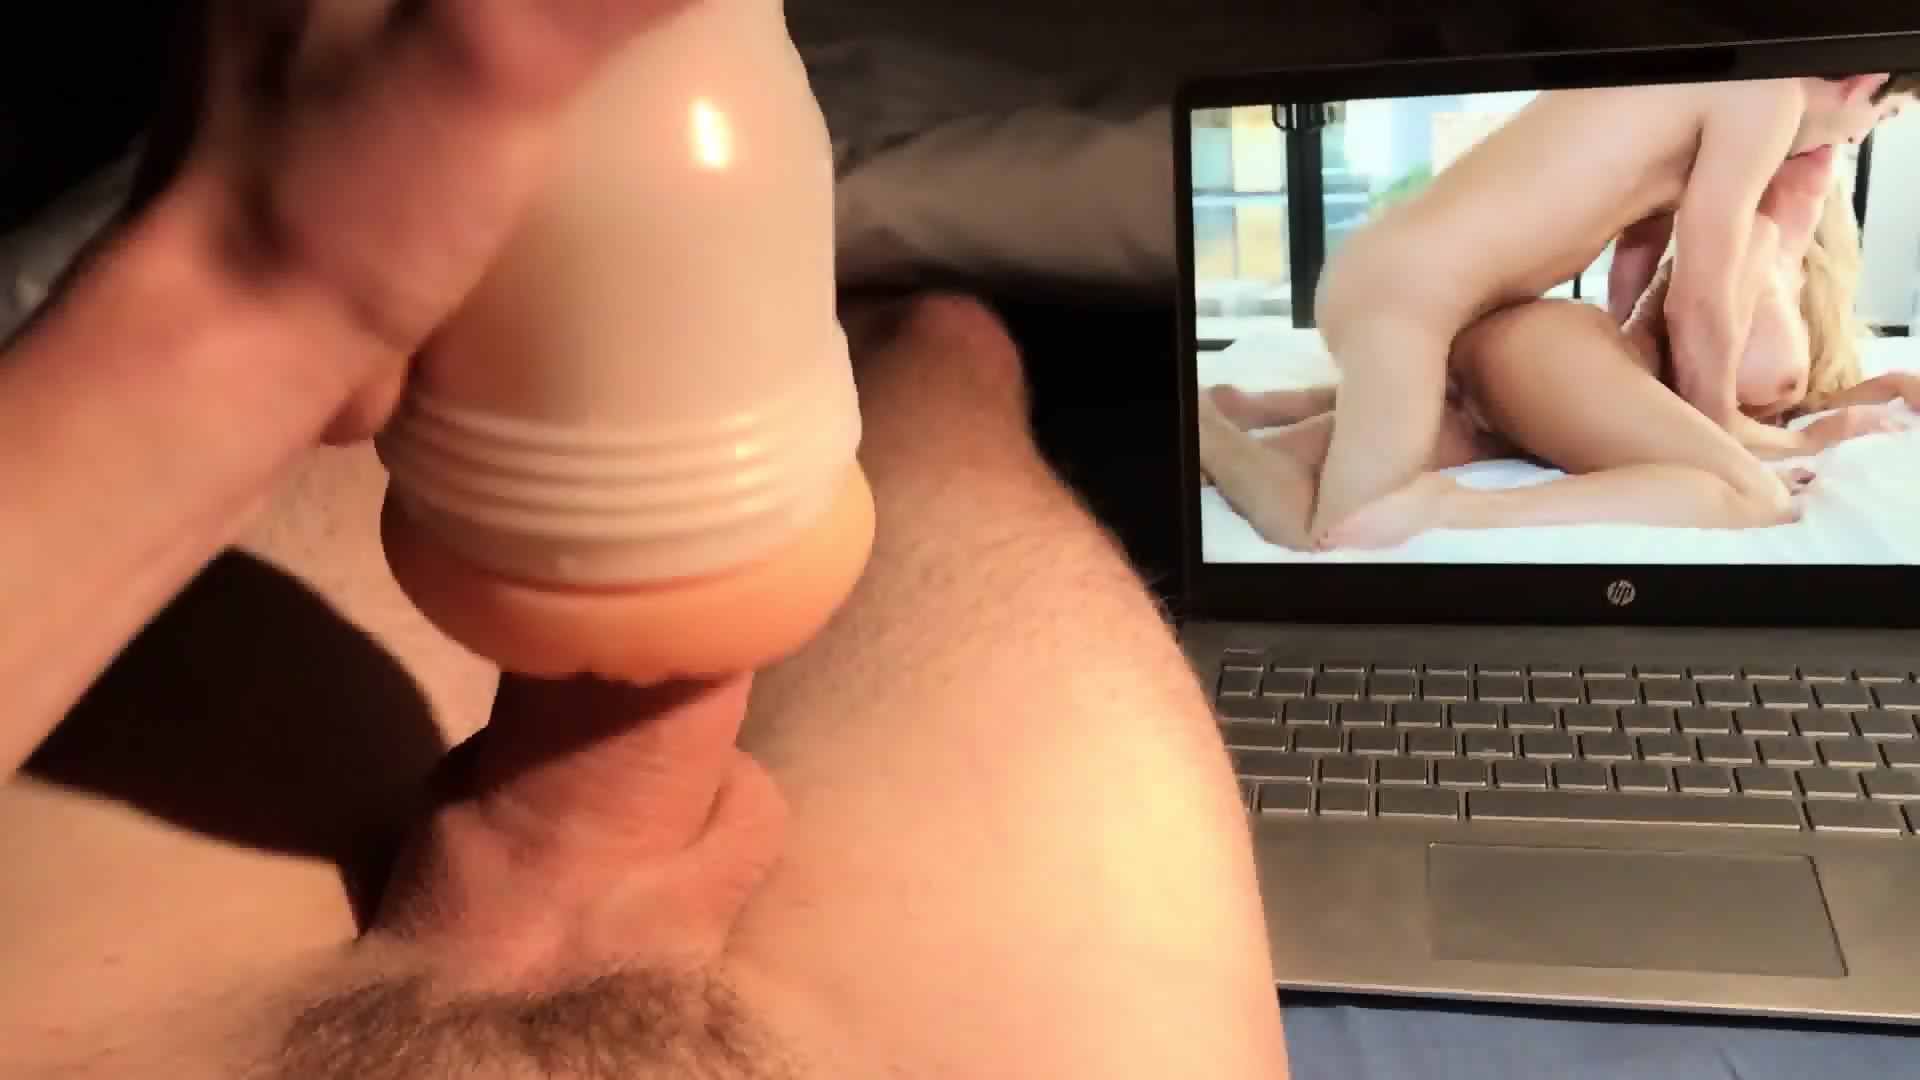 Masterbating cumming fleshlight while watching porn